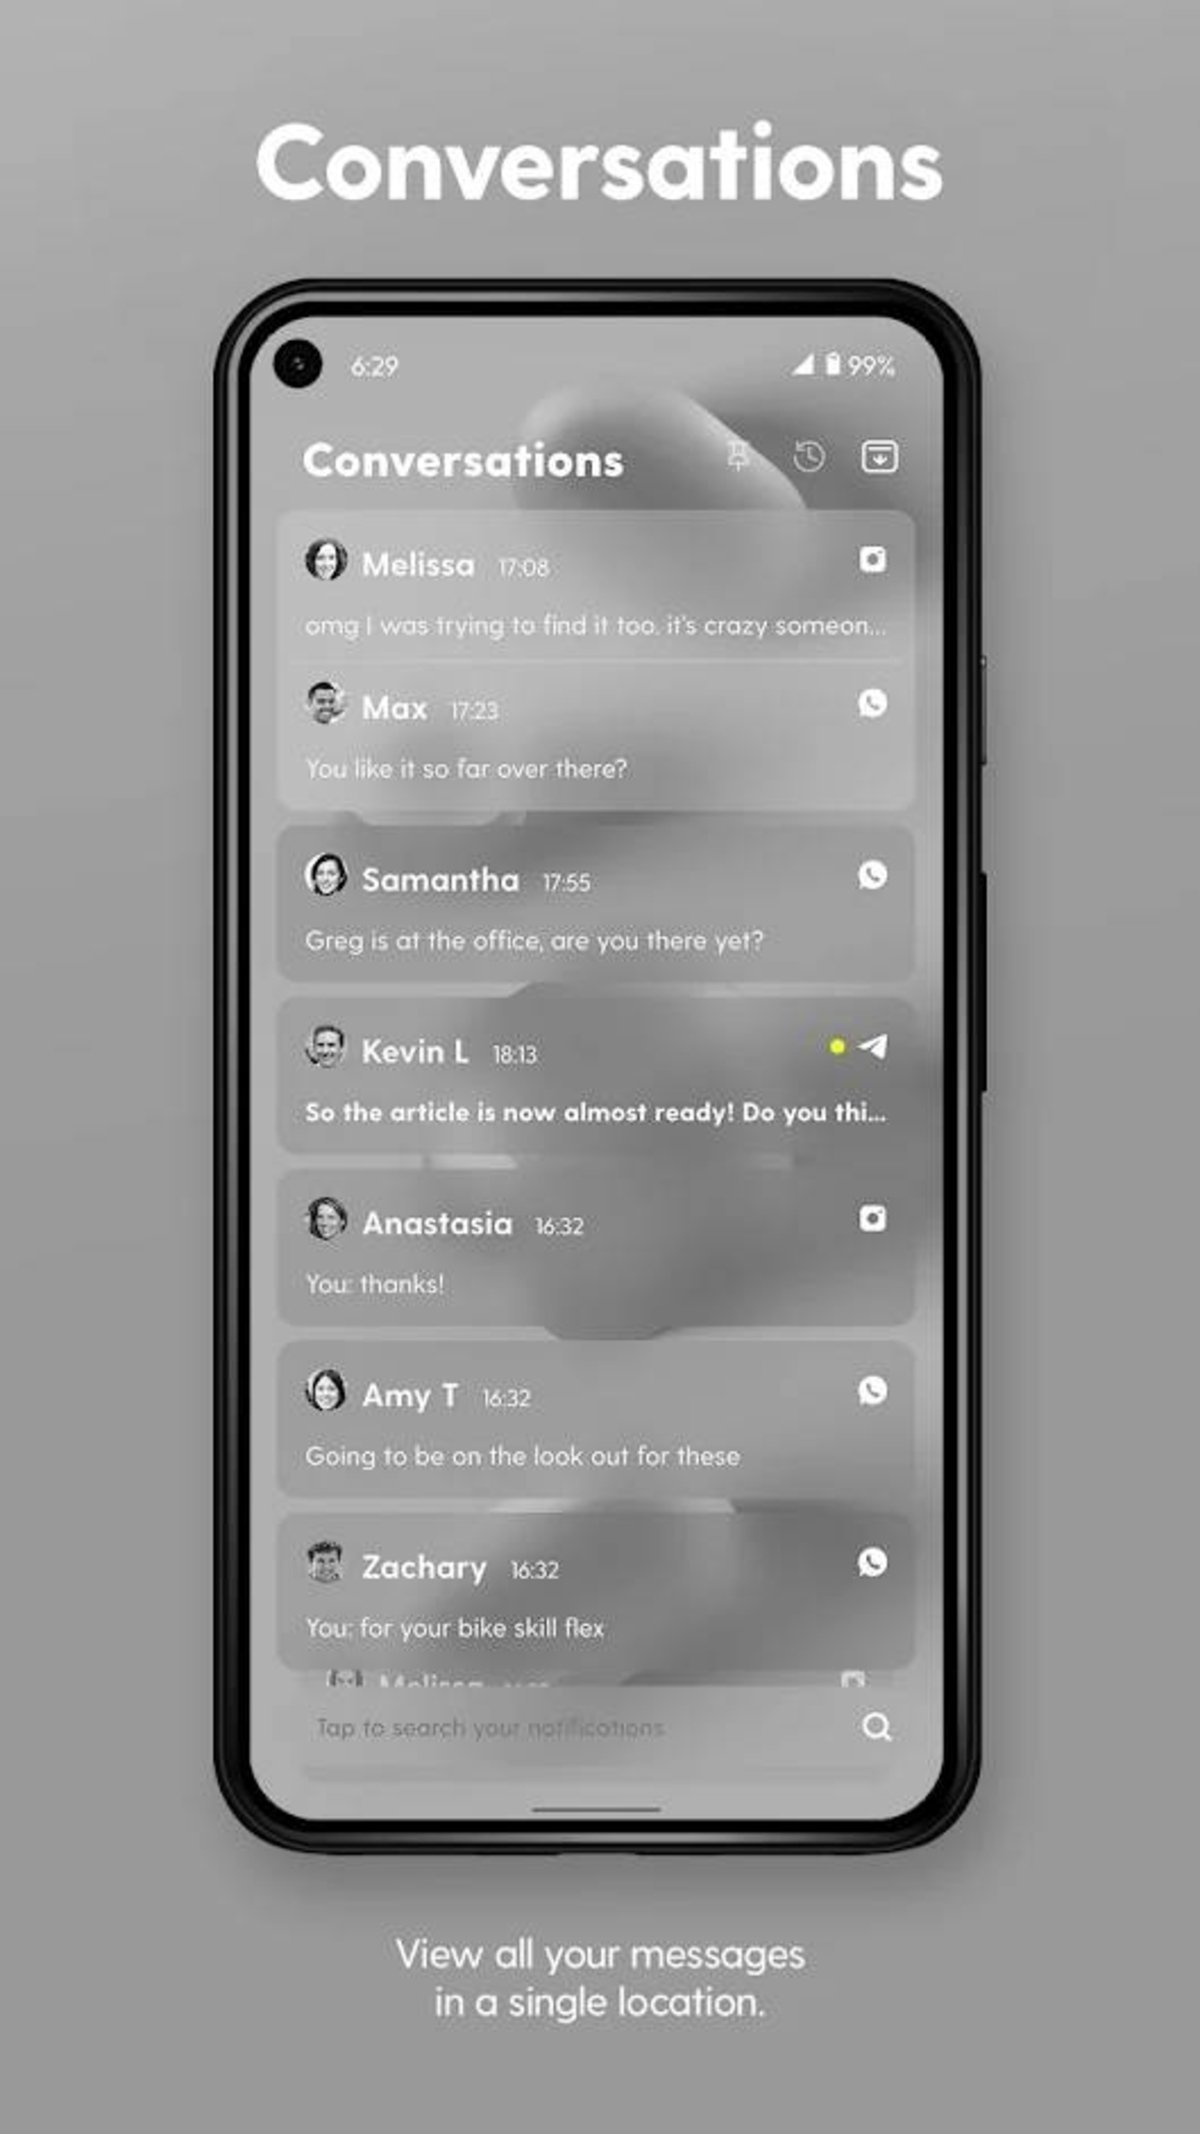 7 mejores launchers minimalistas para instalar en Android